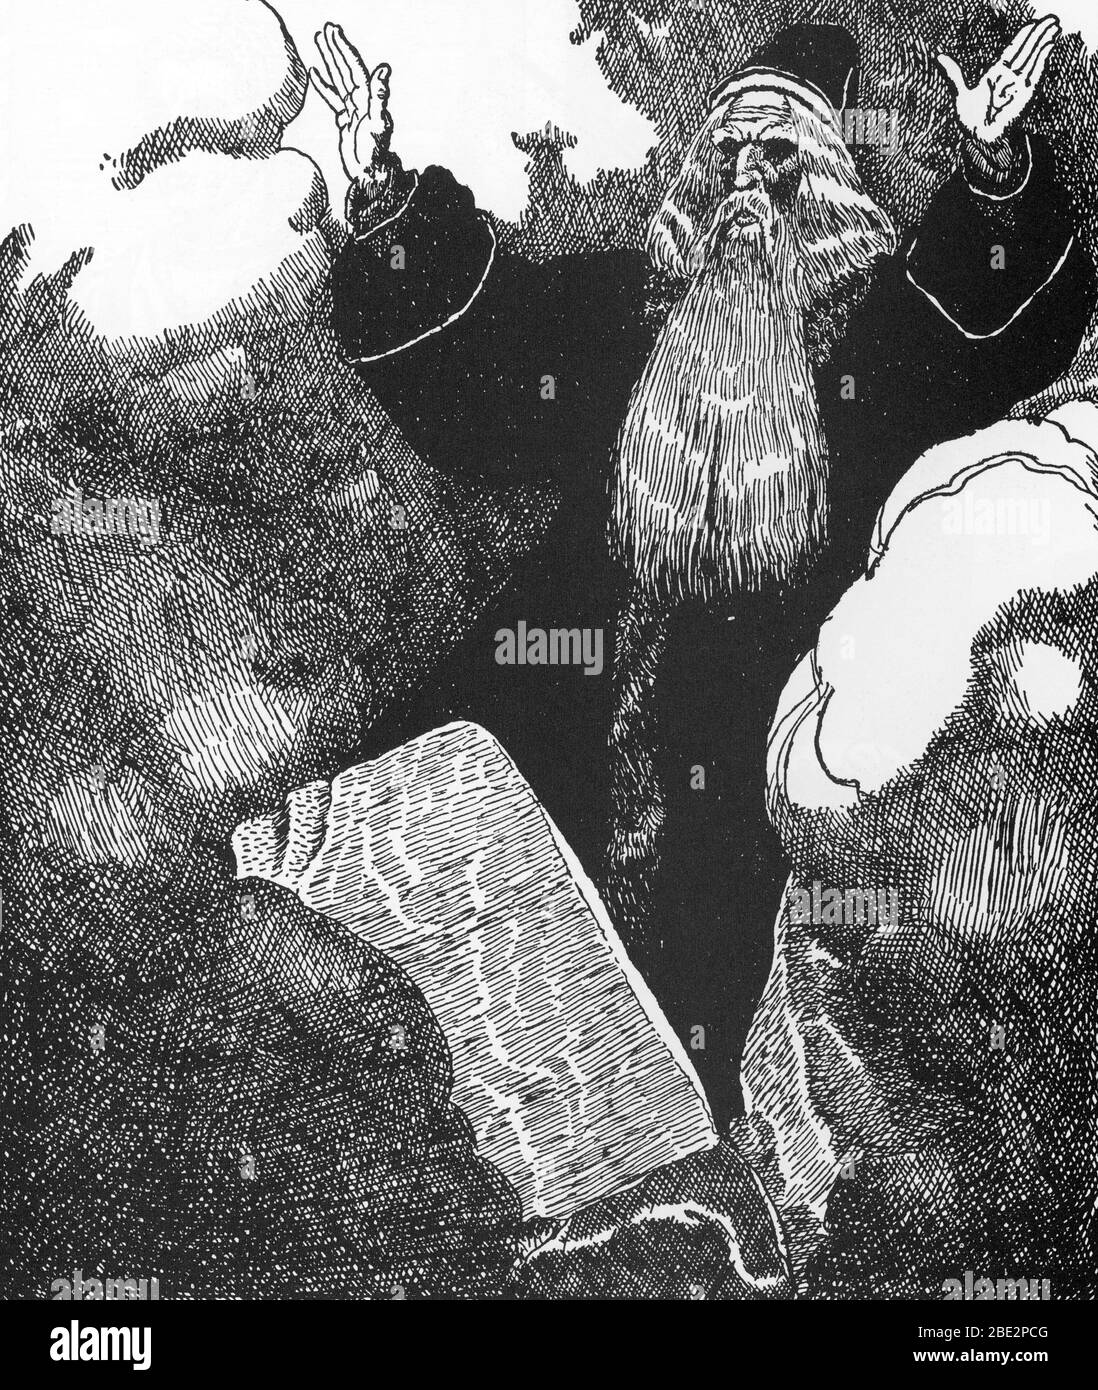 'Legende arthurienne : Merlin l'enchanteur' (Merlin l'enchanteur) Illustration d'Howard Pyle (1853-1911) tiree de 'The Story of Sir Launcelot and HIS Banque D'Images